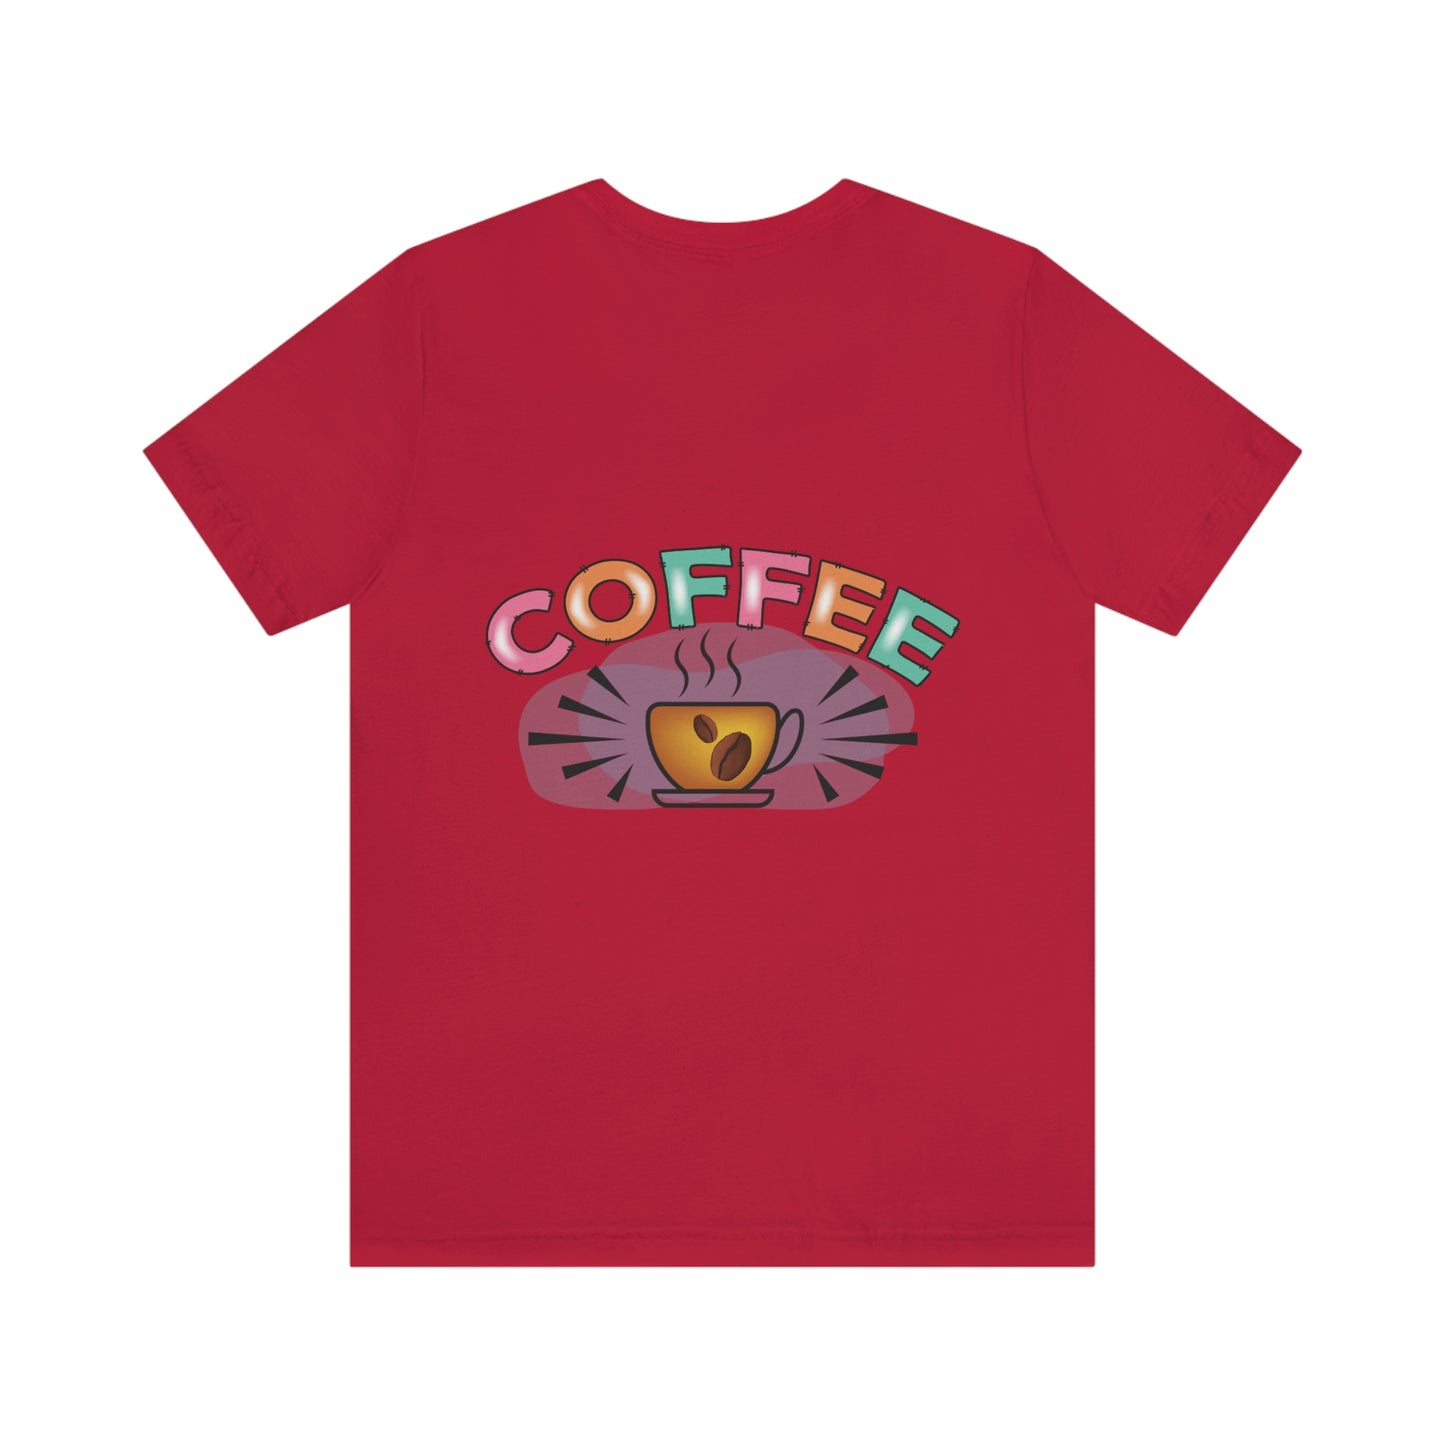 Coffee Style, Coffee Time, Coffee Lovers, Short Sleeve Tee